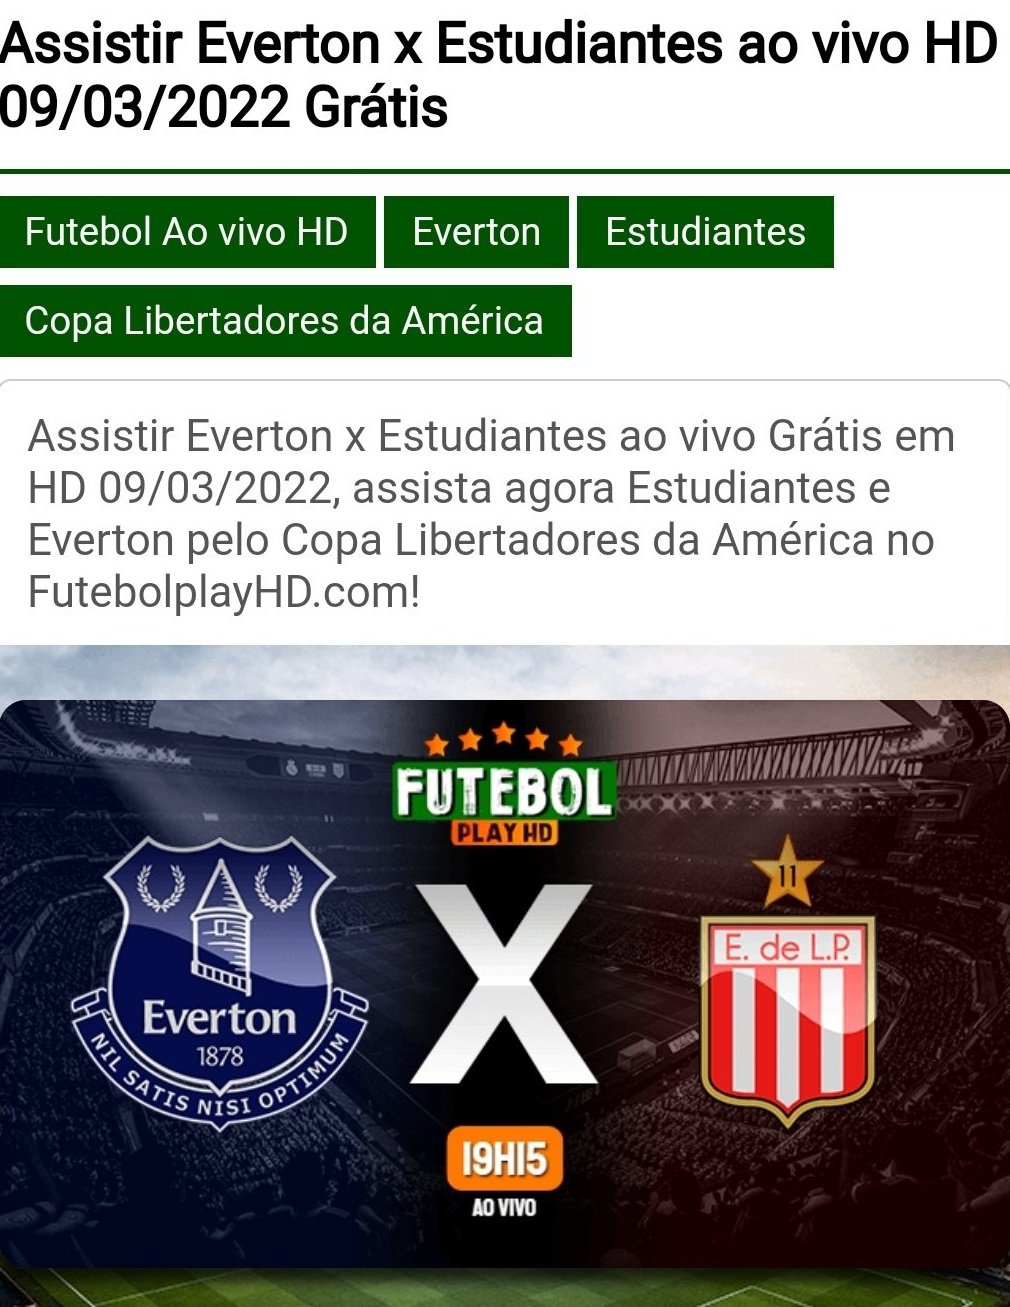 Futebol Play HD: assista futebol online gratuitamente e com qualidade